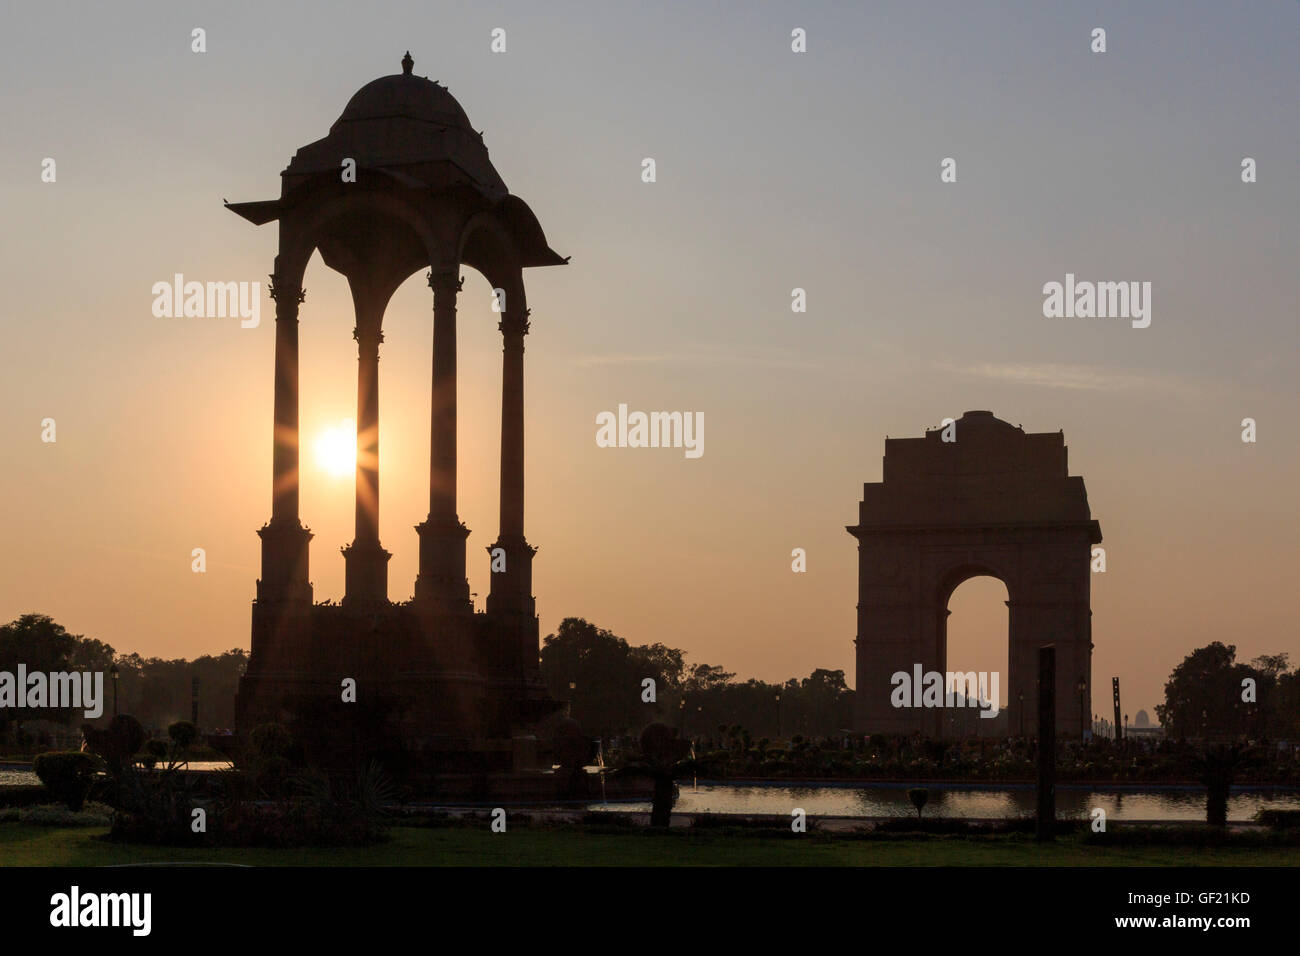 The India Gate, New Delhi, Delhi, India Stock Photo